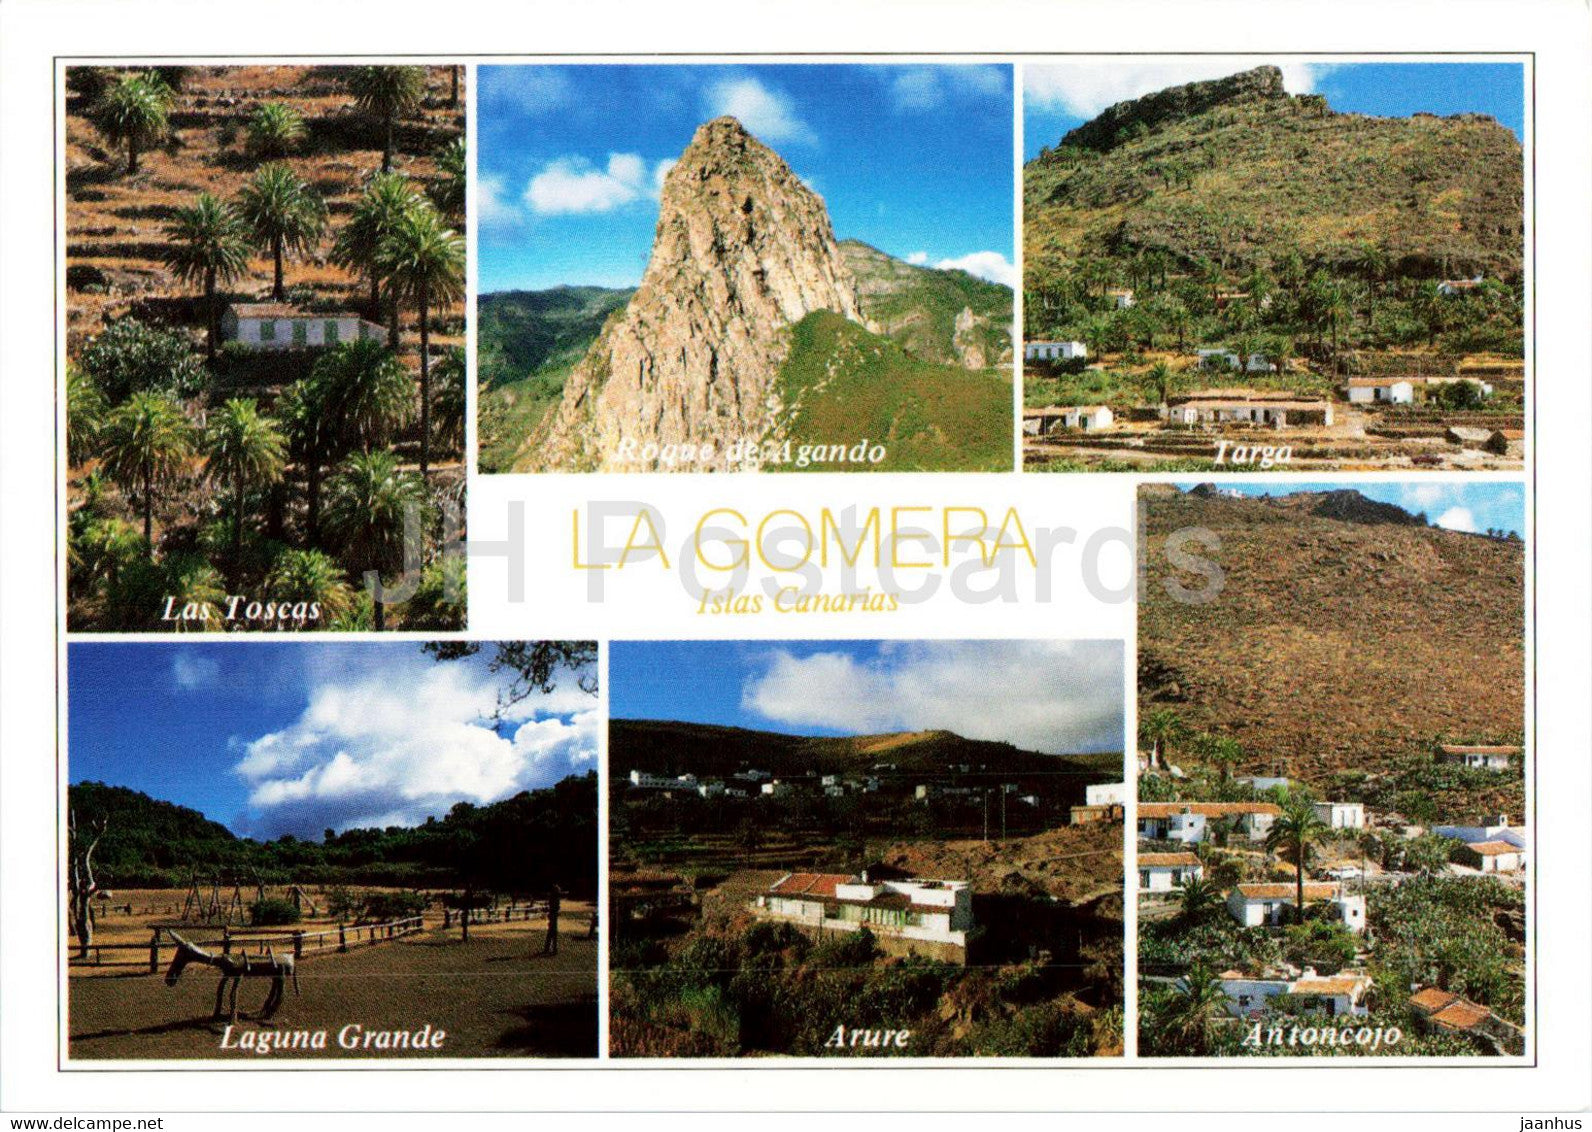 La Gomera - Los Toscas - Targa - Laguna Grande - Arure - Antoncojo - Islas Canarias - 36 - Spain - unused - JH Postcards